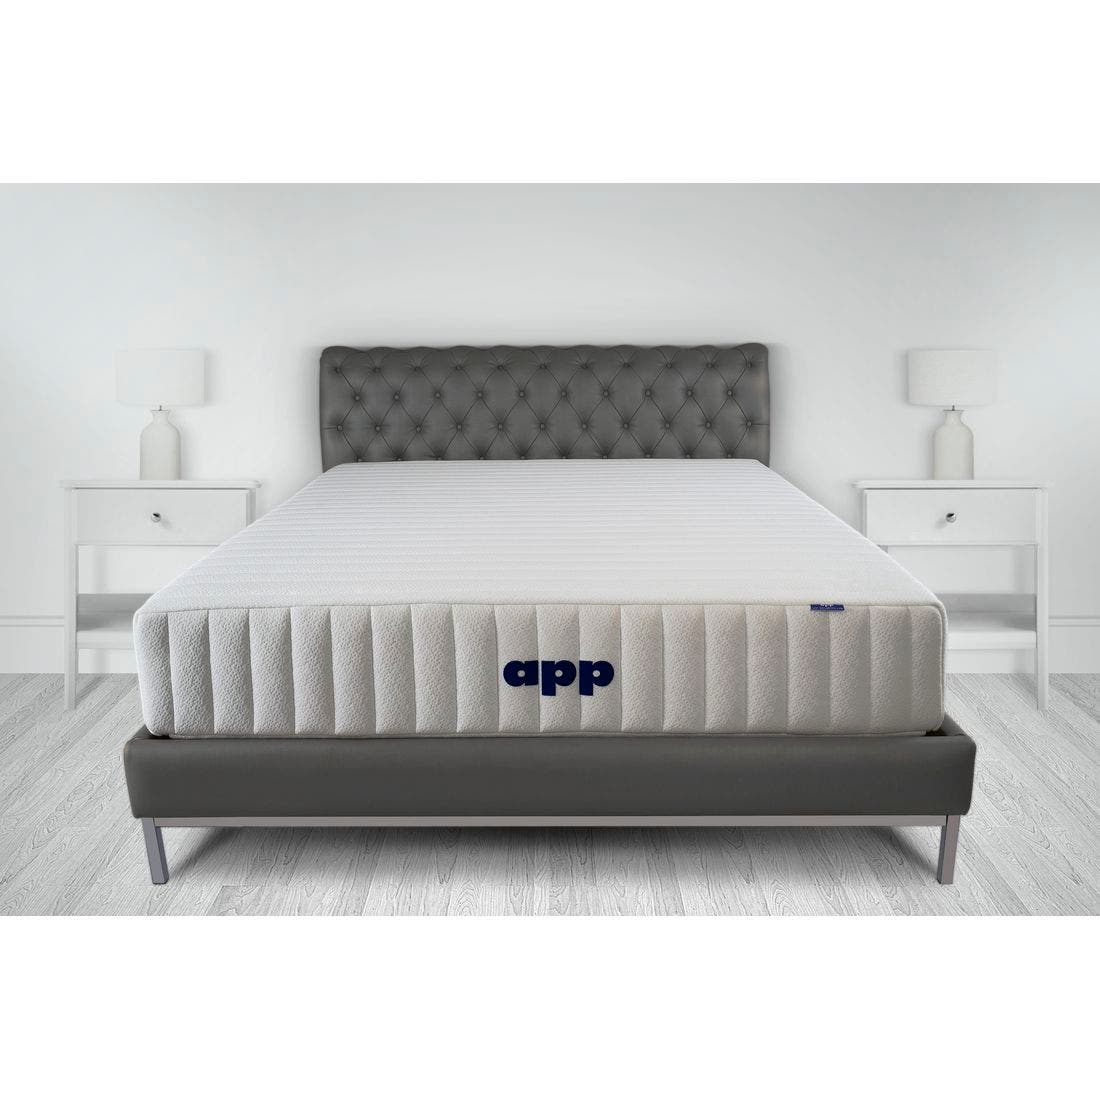 39015039-mattress-bedding-mattresses-pocket-spring-mattress-31